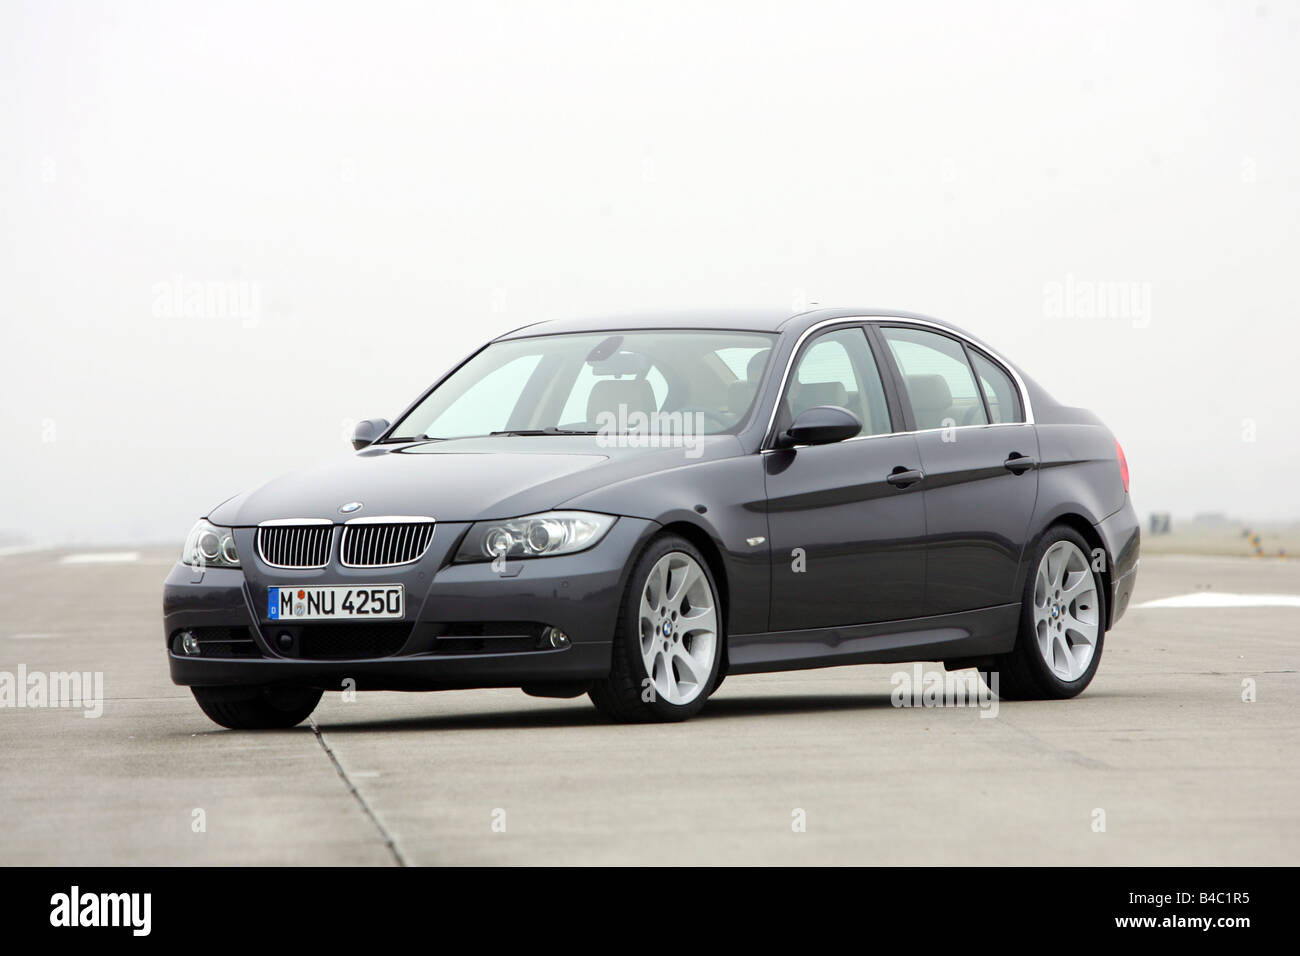 Coche, BMW 330i, 3er BMW, limusina, de clase media, el modelo del año  2004-, negro, de pie, sosteniendo, diagonal desde la parte frontal, frontal  Fotografía de stock - Alamy